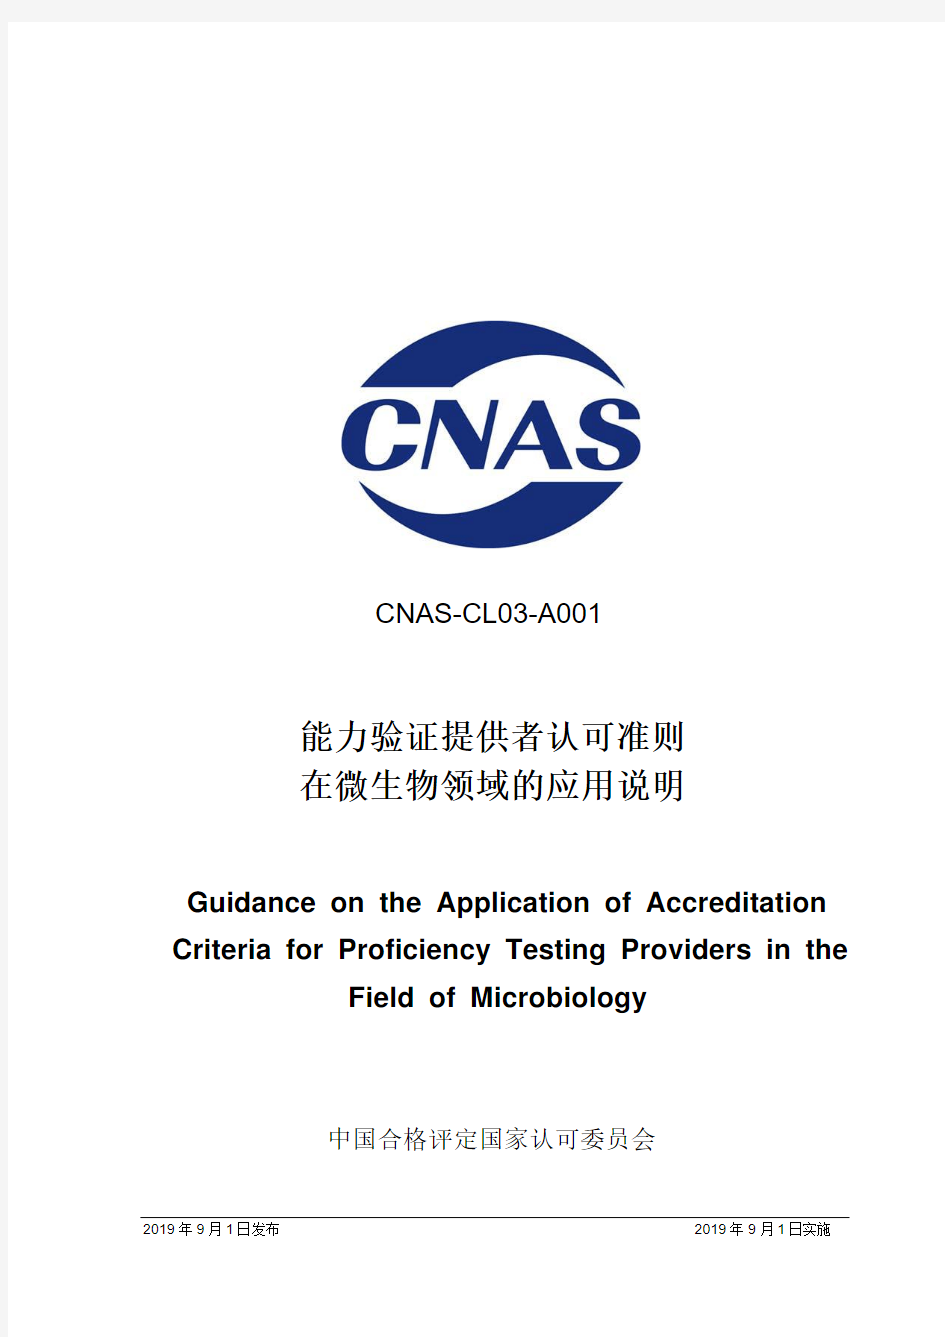 CNAS-CL03-A001：2019《能力验证提供者认可准则在微生物领域的应用说明》